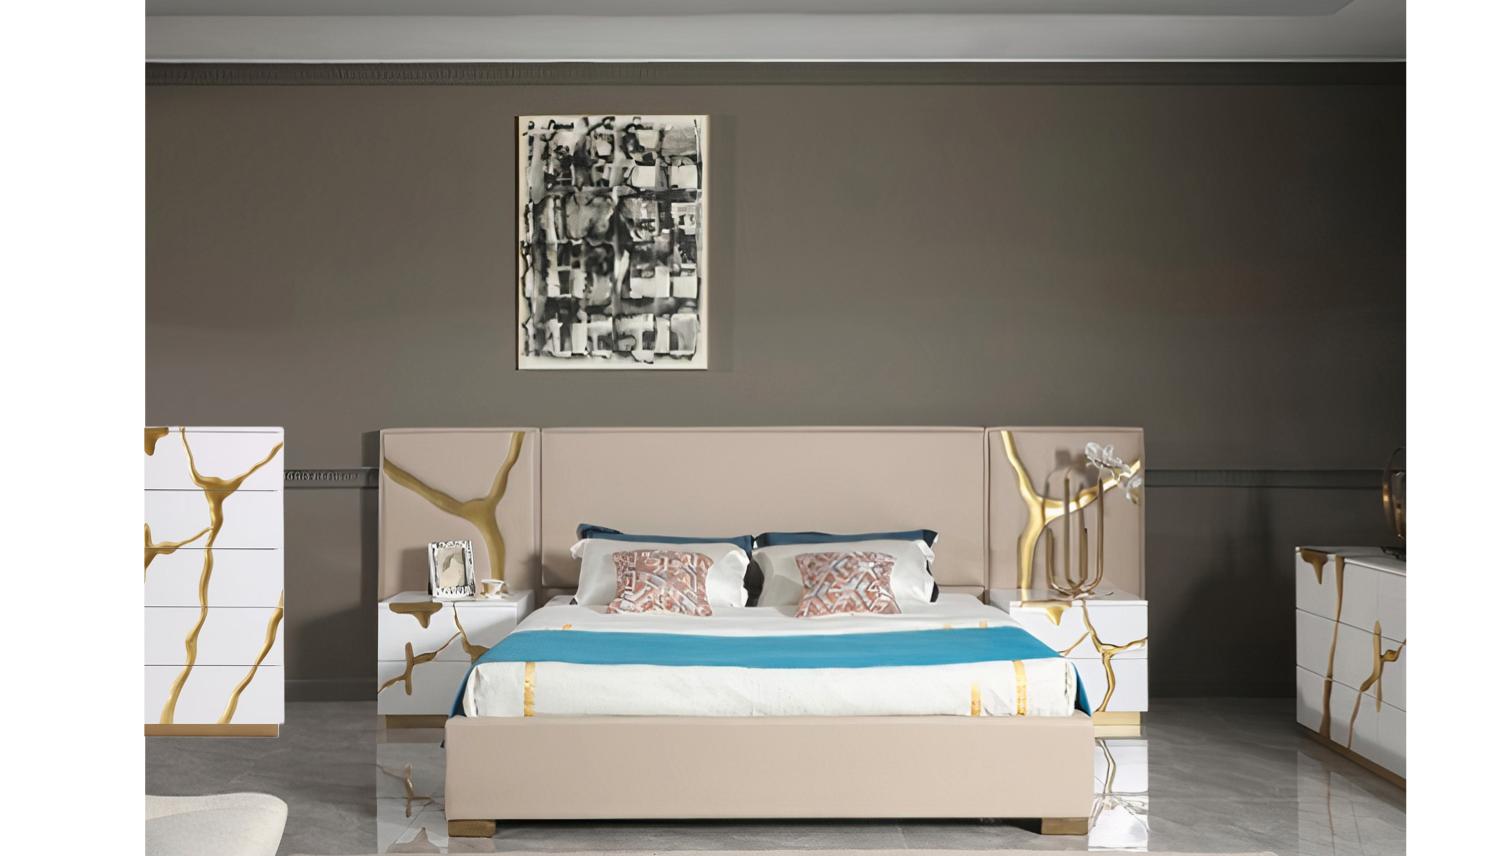 

    
Glam Beige Leather & Gold King Platform Bedroom Set 6Pcs by Modrest Aspen
